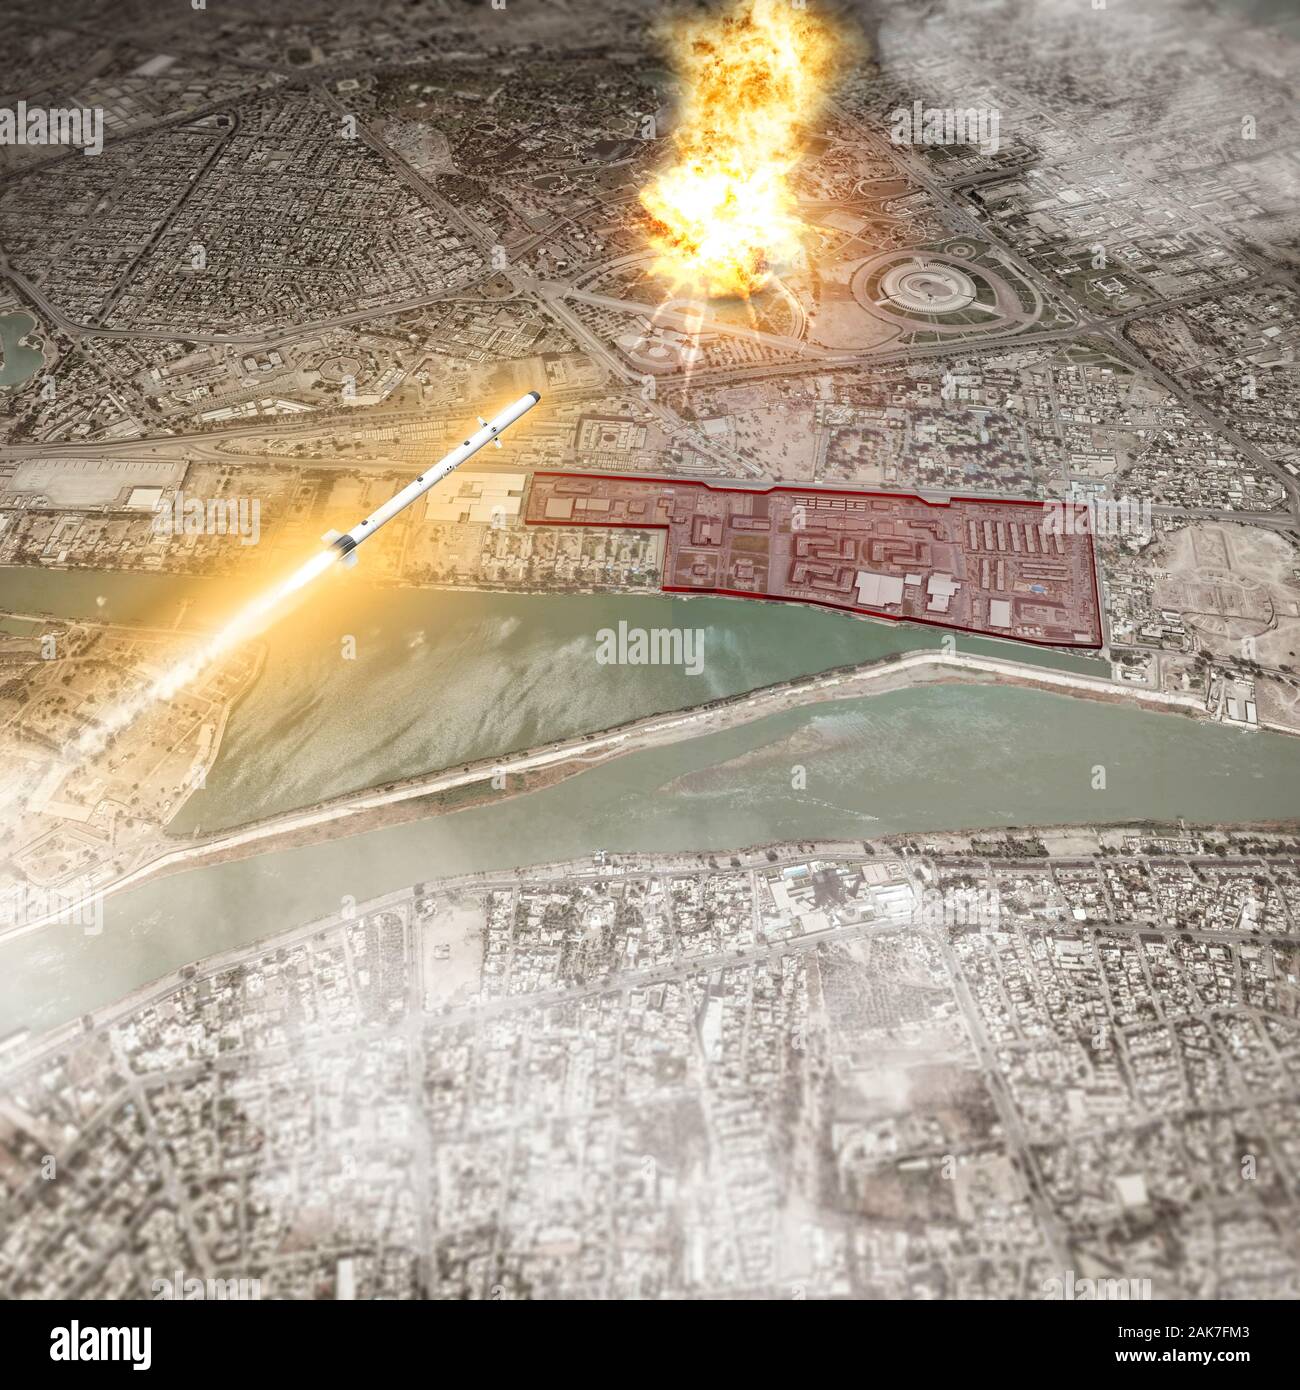 Rocket attack hits près de l'ambassade des Etats-Unis à Bagdad, zone verte. Alarme dans le Moyen-Orient tensions entre l'Iran et les États-Unis. Vue aérienne Banque D'Images